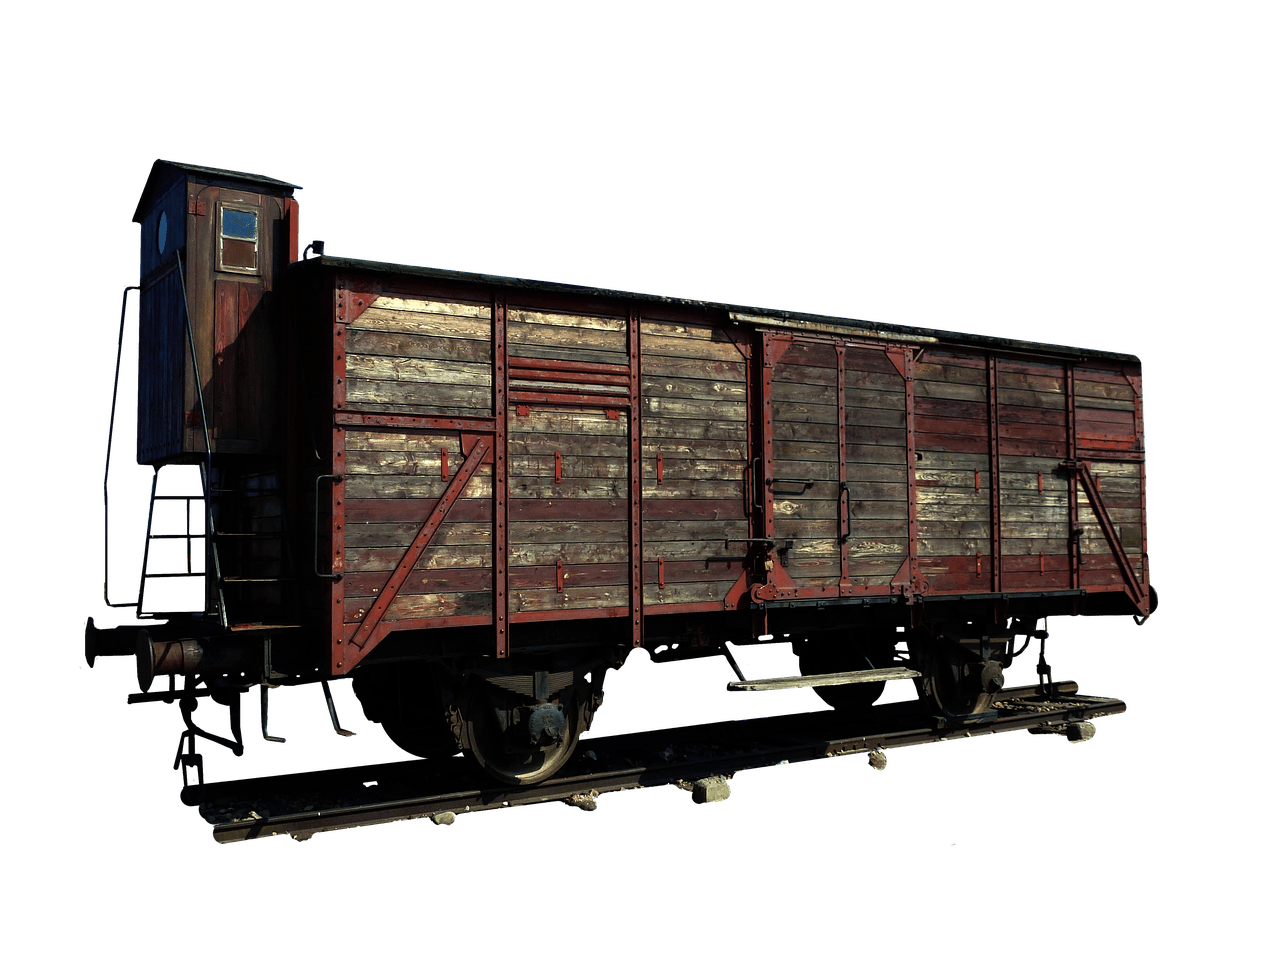 wagon-3758917_1280